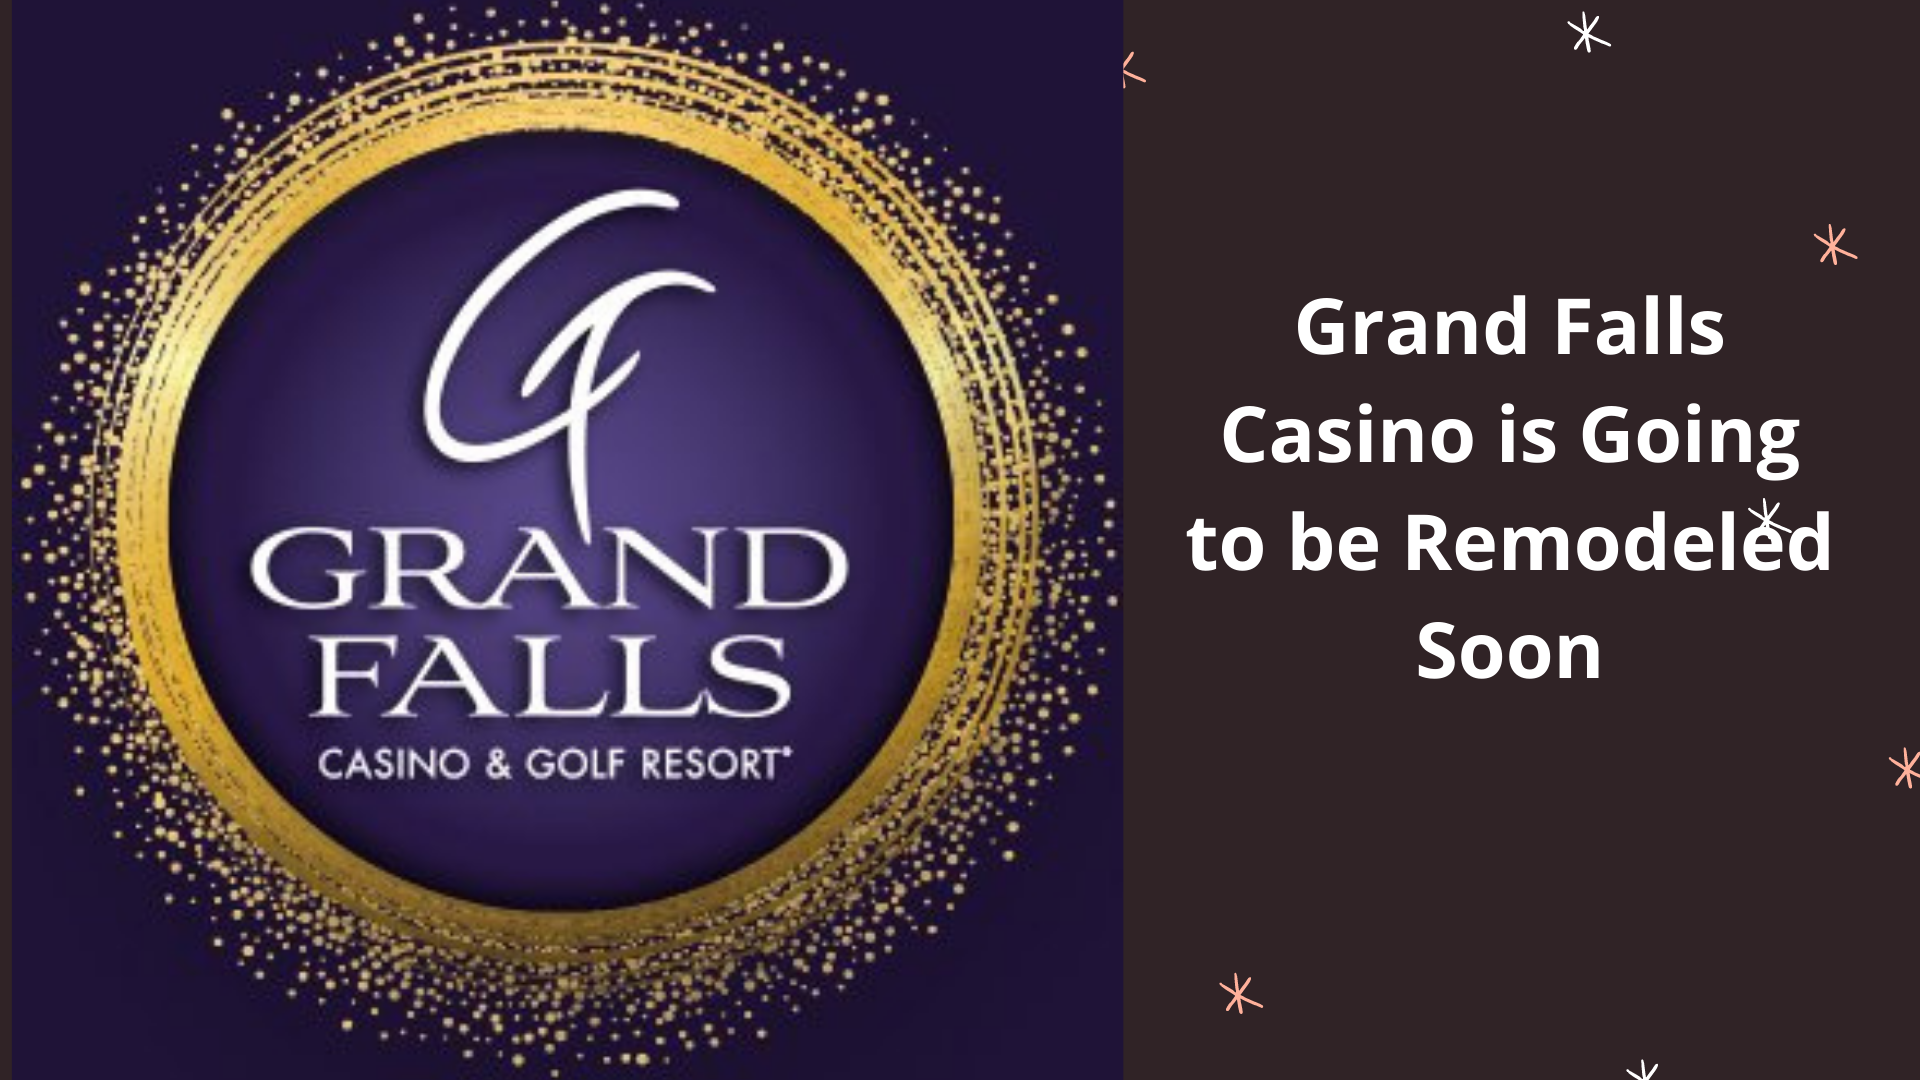 Grand Falls Casino